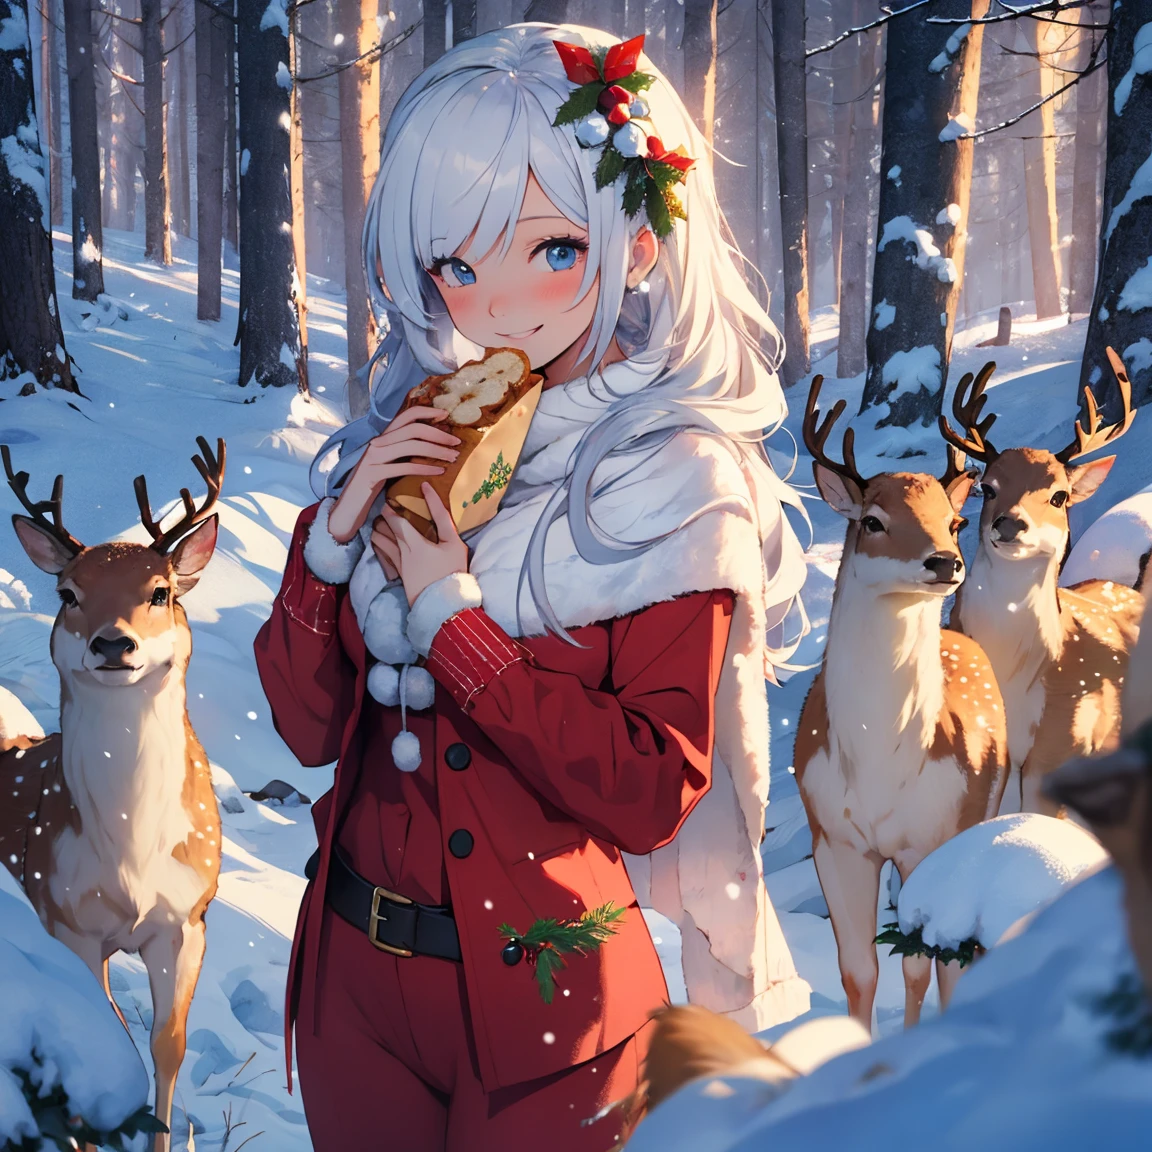 joyeux noël, Snow Maiden dans un costume rouge sexy, souriant, Cerf de forêt, Snow Maiden nourrit du pain de cerf, forêt avec des arbres, guirlandes sur branches